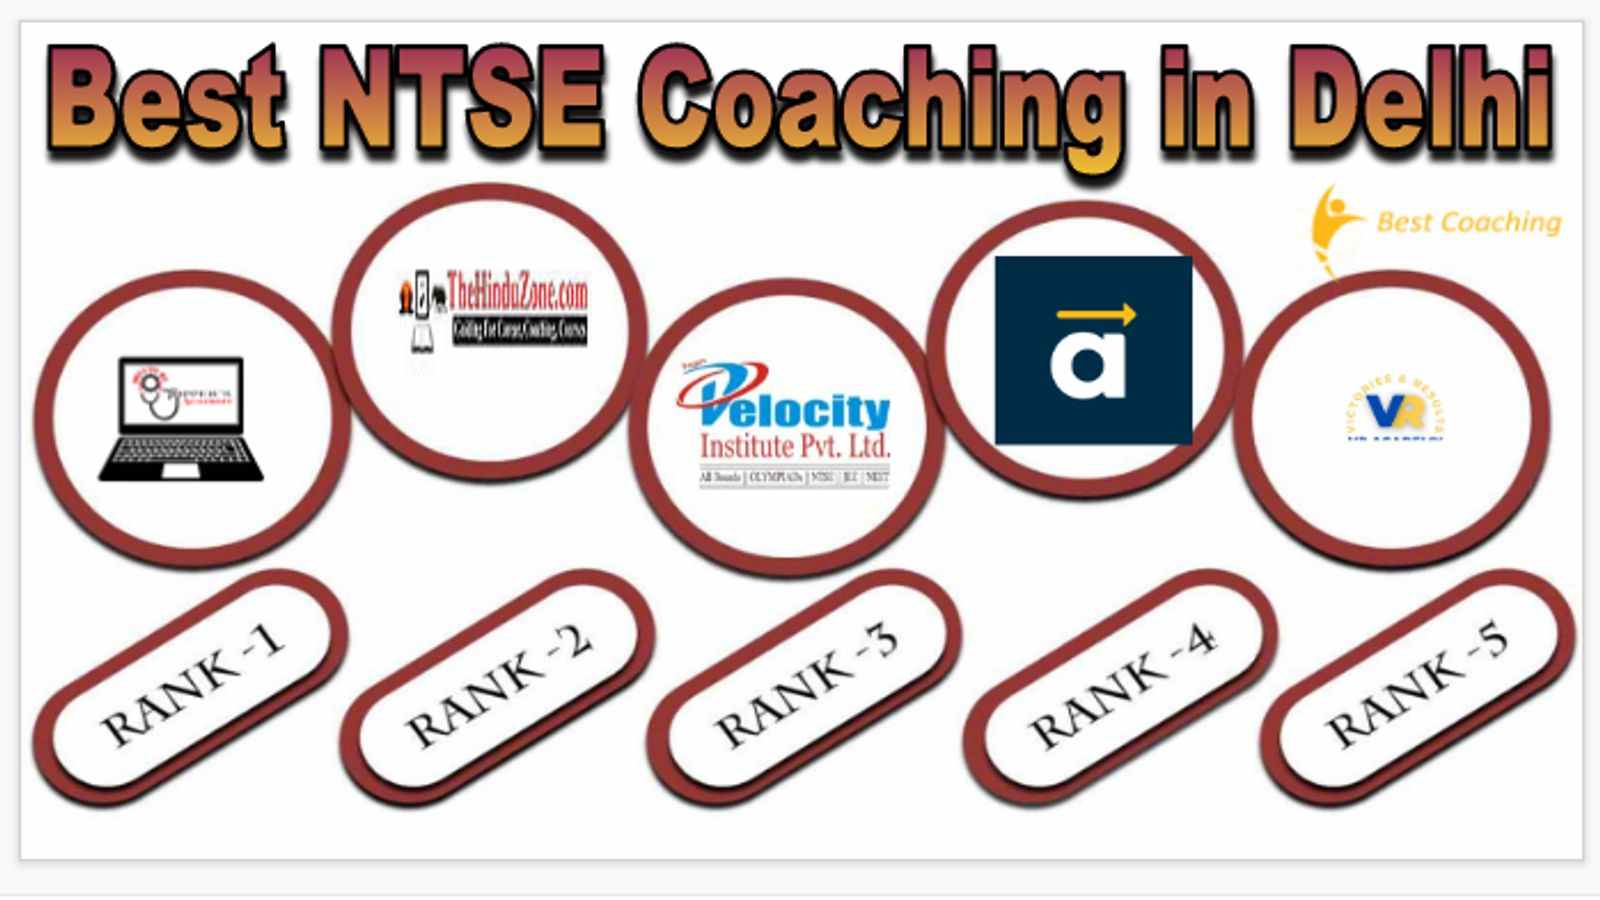 Best NTSE Coaching in Delhi